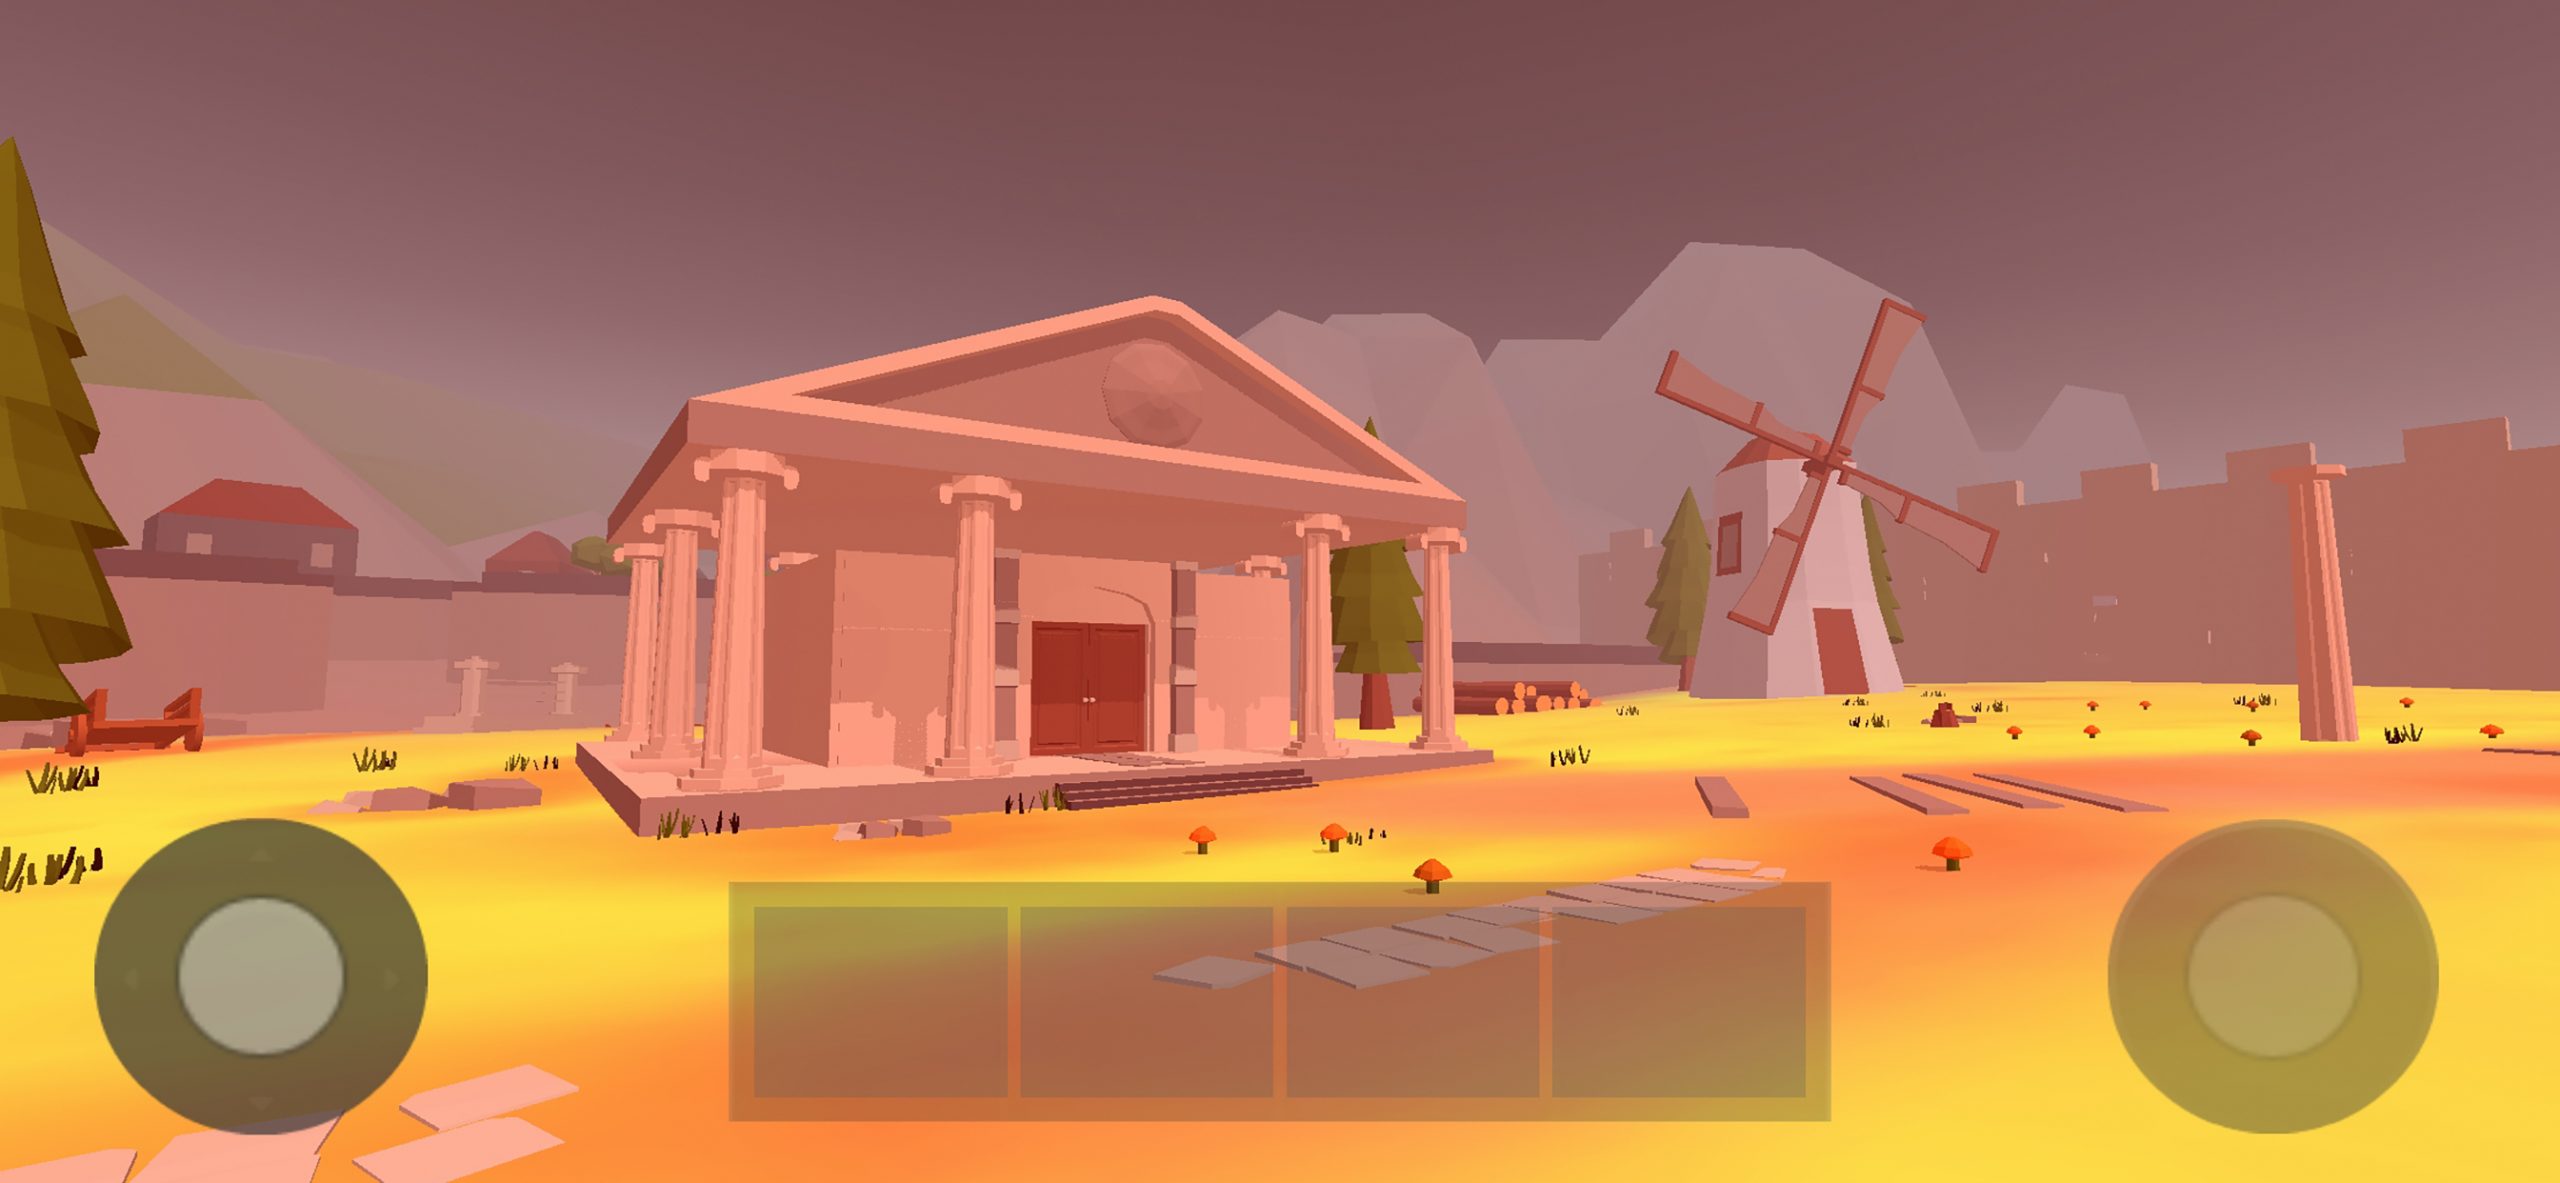 Δημοτικό Θέατρο Πειραιά: Η «Αντιγόνη» του Σοφοκλή έγινε ψηφιακό παιχνίδι με 3D περιήγηση στη Θήβα